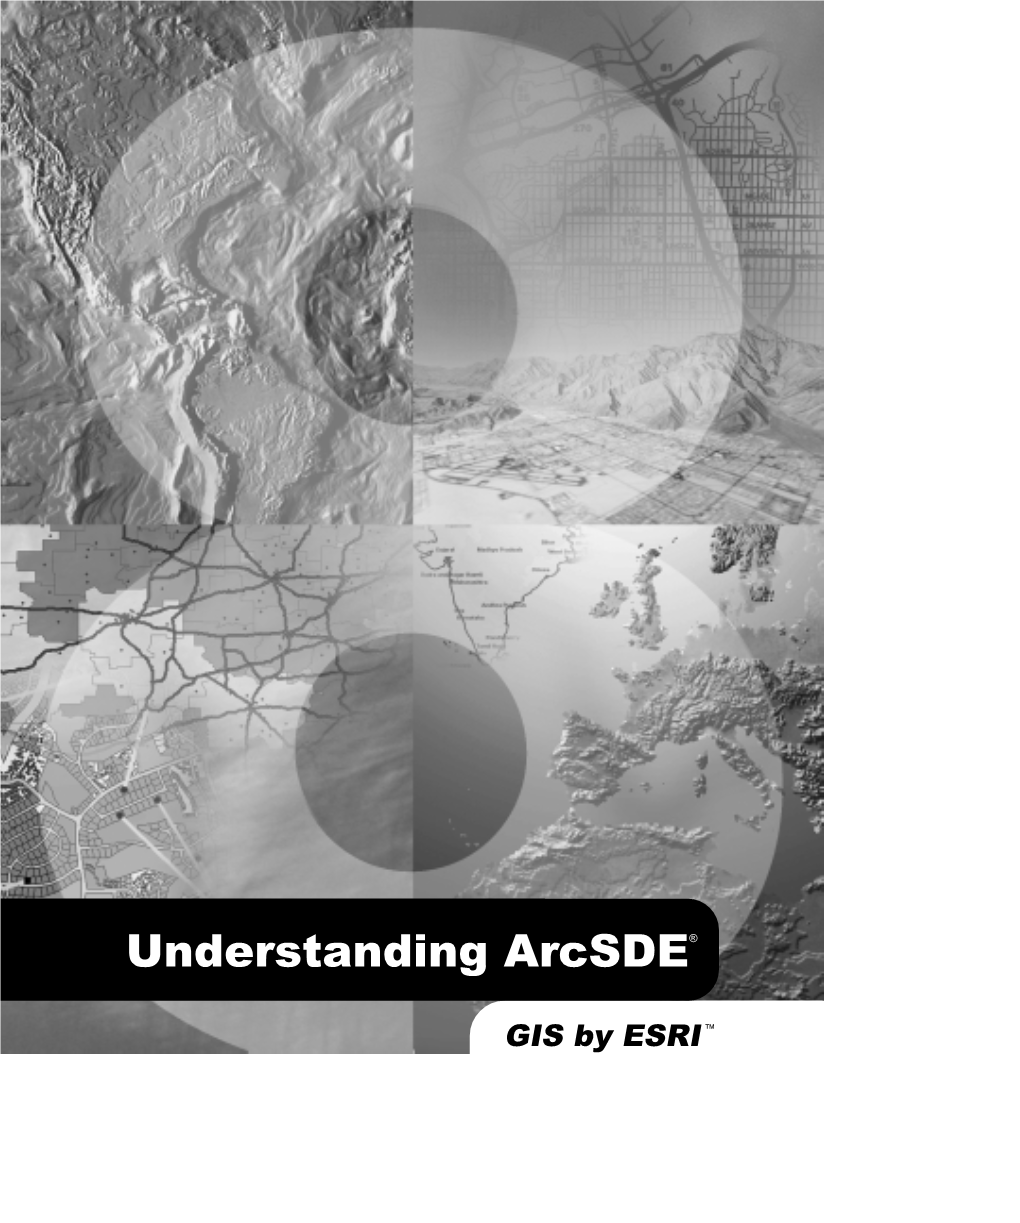 Understanding Arcsde®